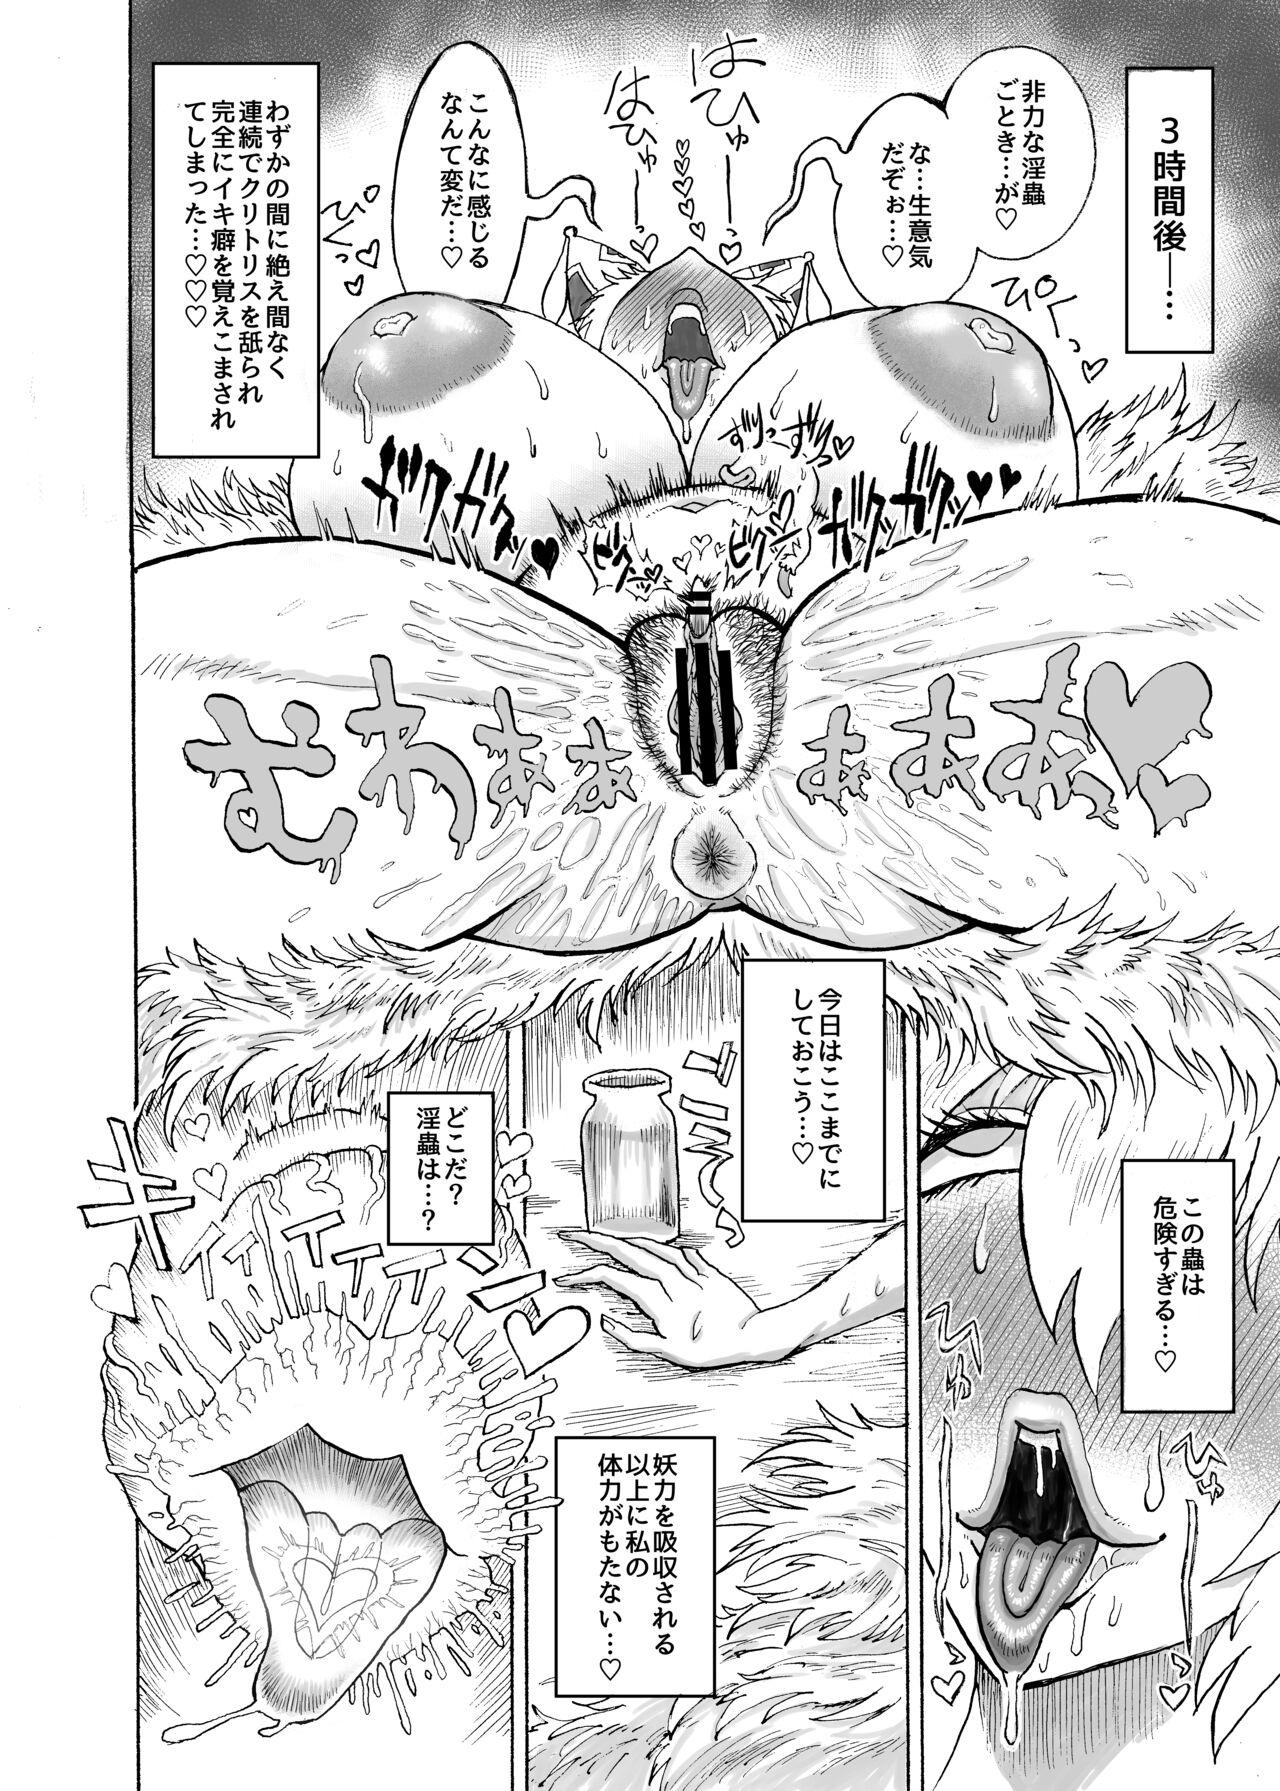 Long Yakumo Ran VS Semen sucking worm - Touhou project Piercings - Page 7